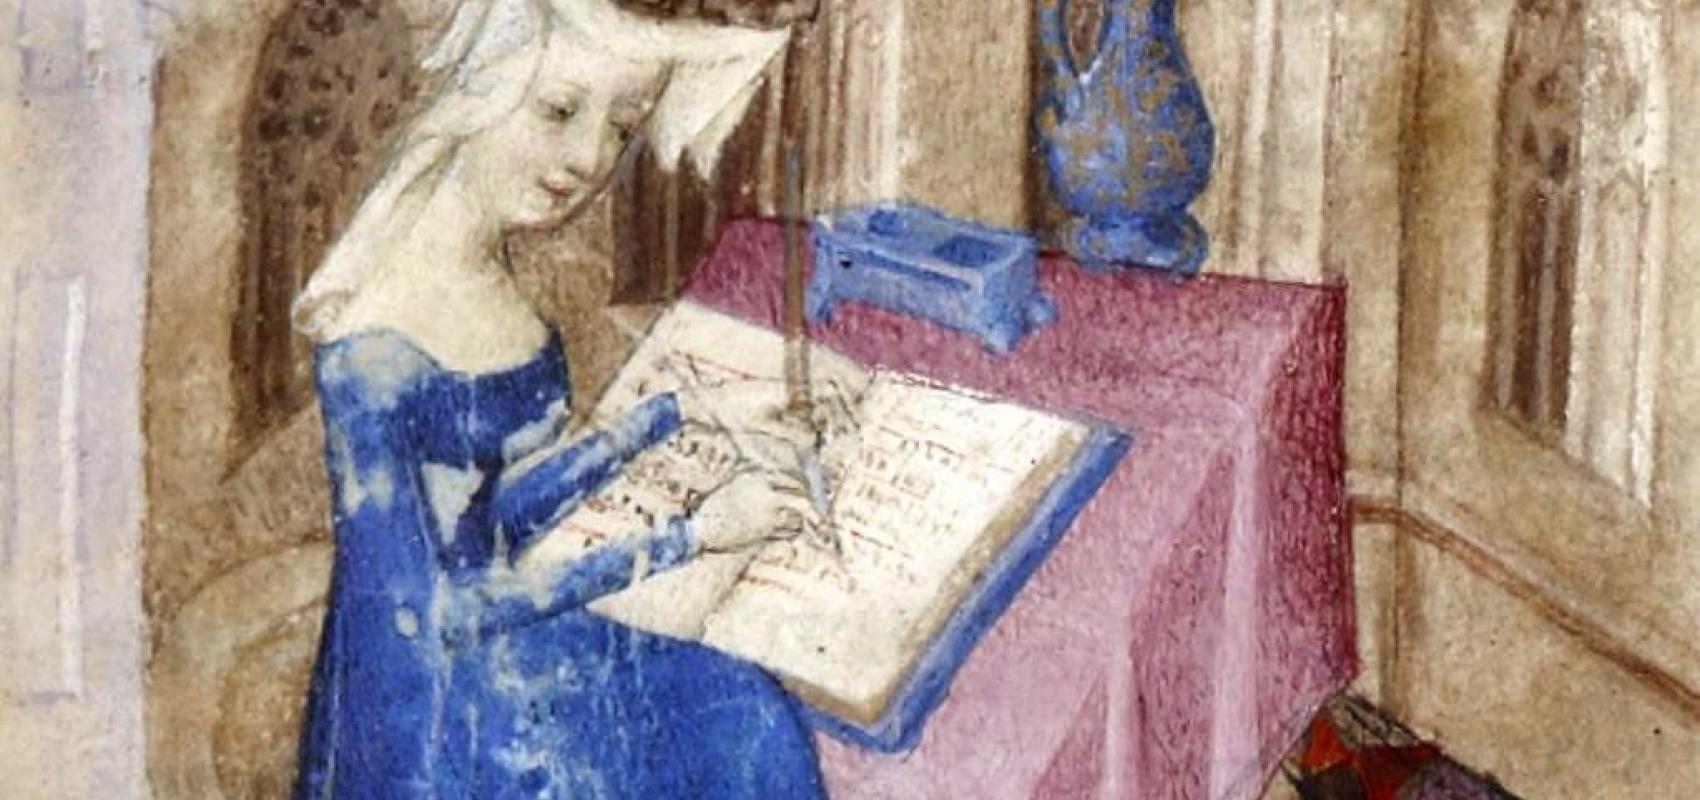 Christine de Pizan, Cent balades d'amant et de dame  - 1400-1410 - BnF, Département des Manuscrits